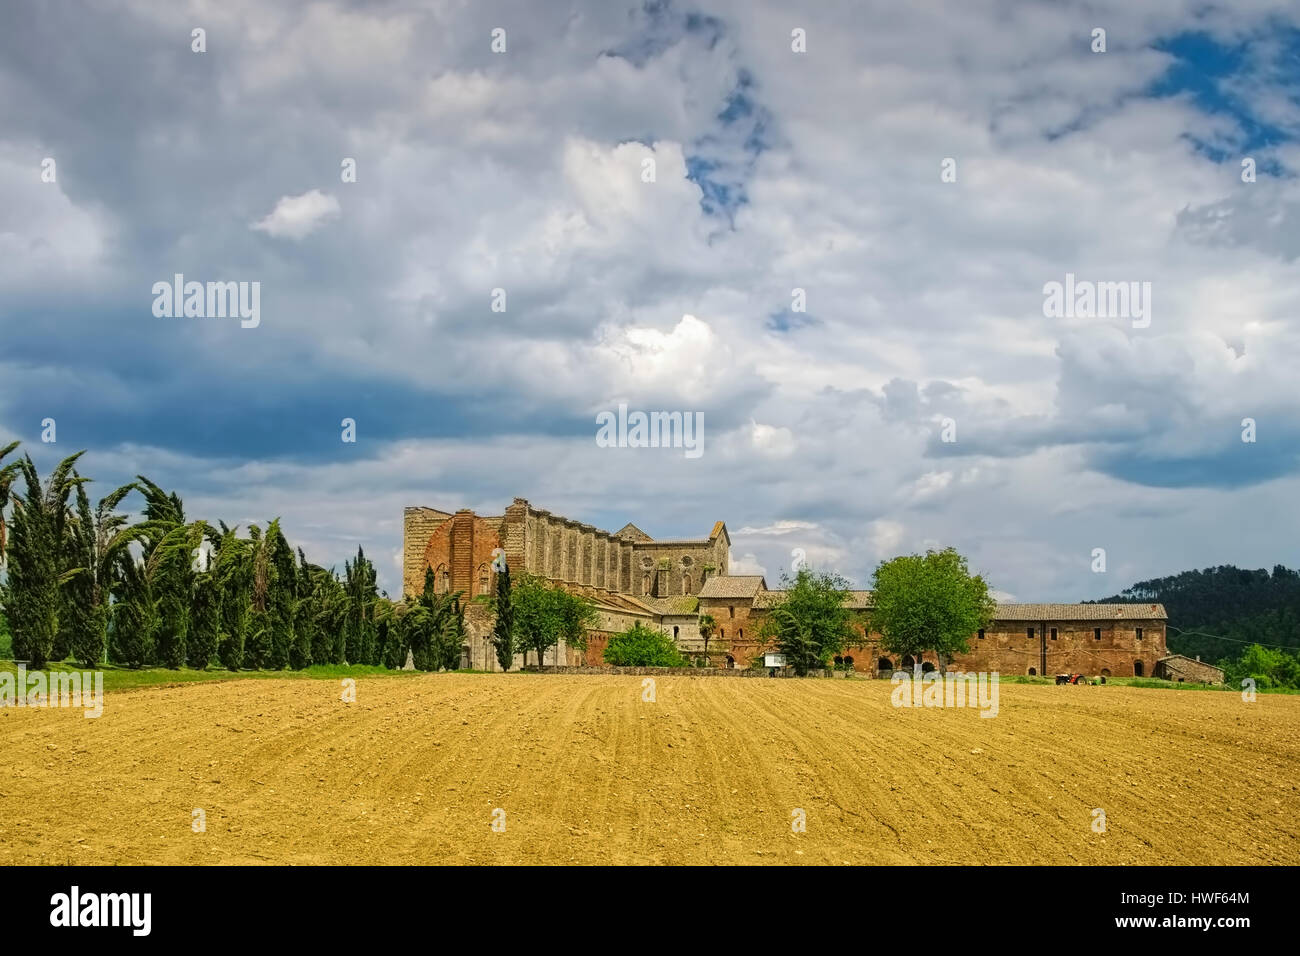 Abbazia di San Galgano cisterician abbey in Tuscany, Italy Stock Photo